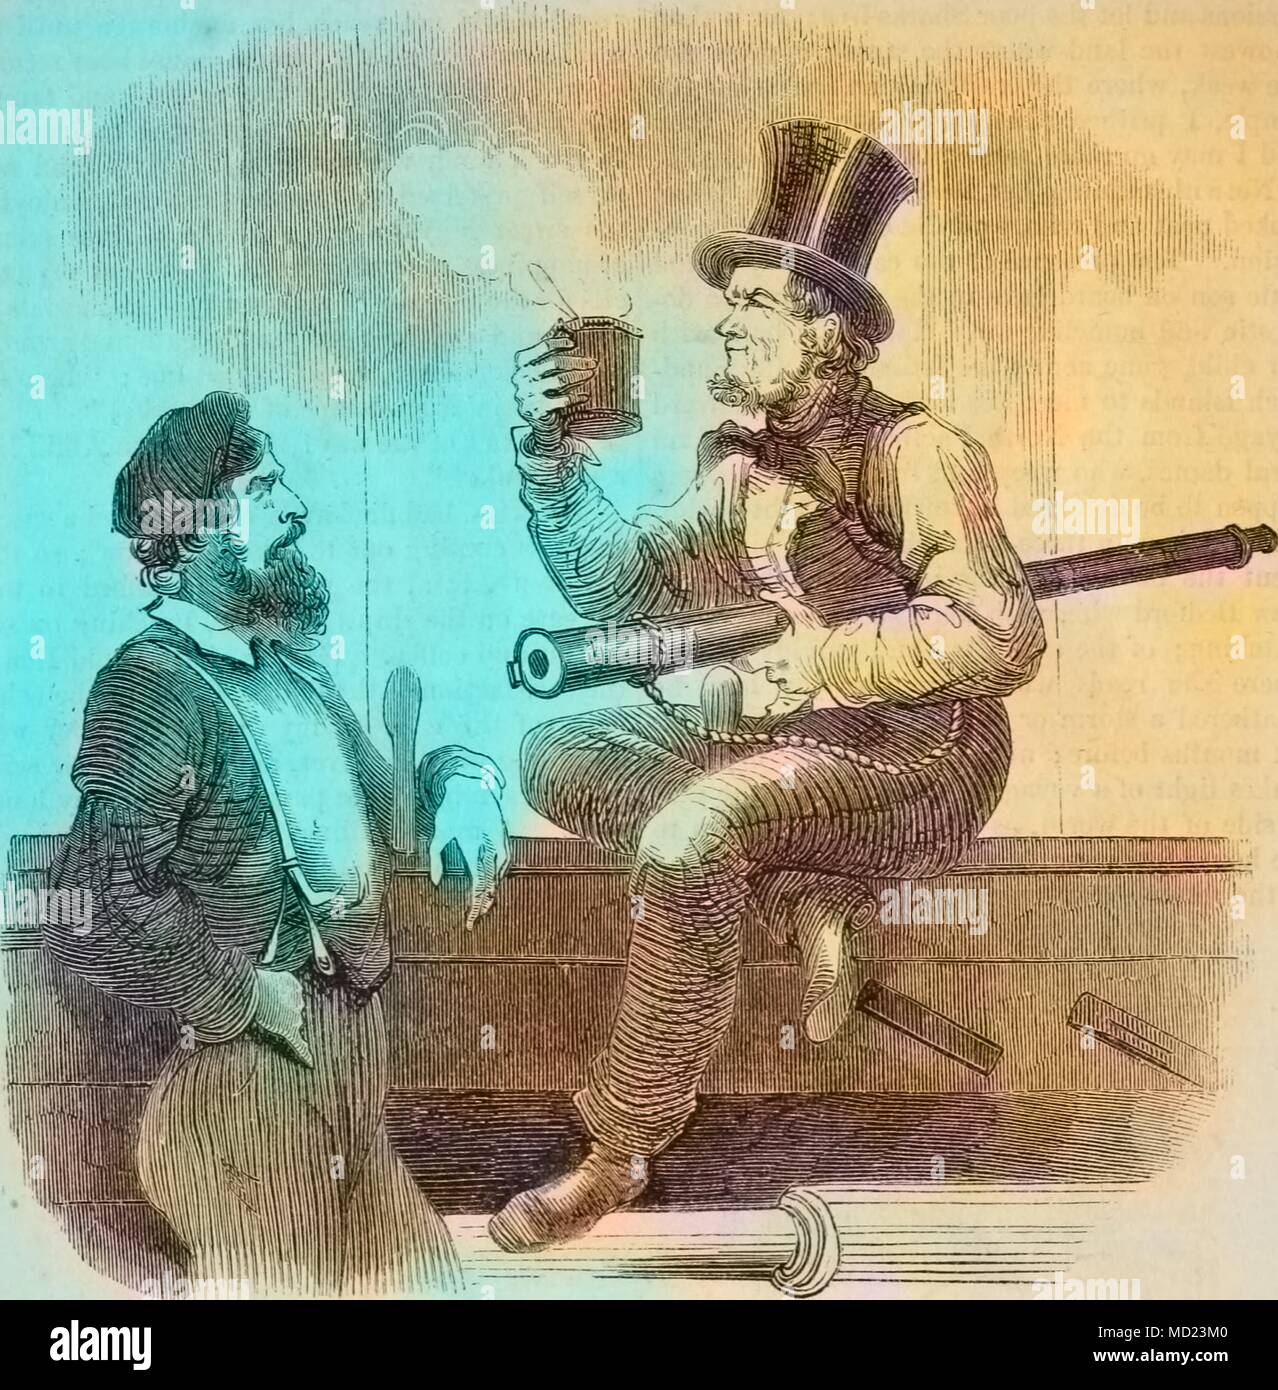 Gravur von einem Koch und der Pilot einer Walfang Schiff, mit einem Teleskop und Tasse Kaffee, 1860. Hinweis: Das Bild hat digital über ein modernes Prozess eingefärbt worden. Farben möglicherweise nicht sein - genau. () Stockfoto